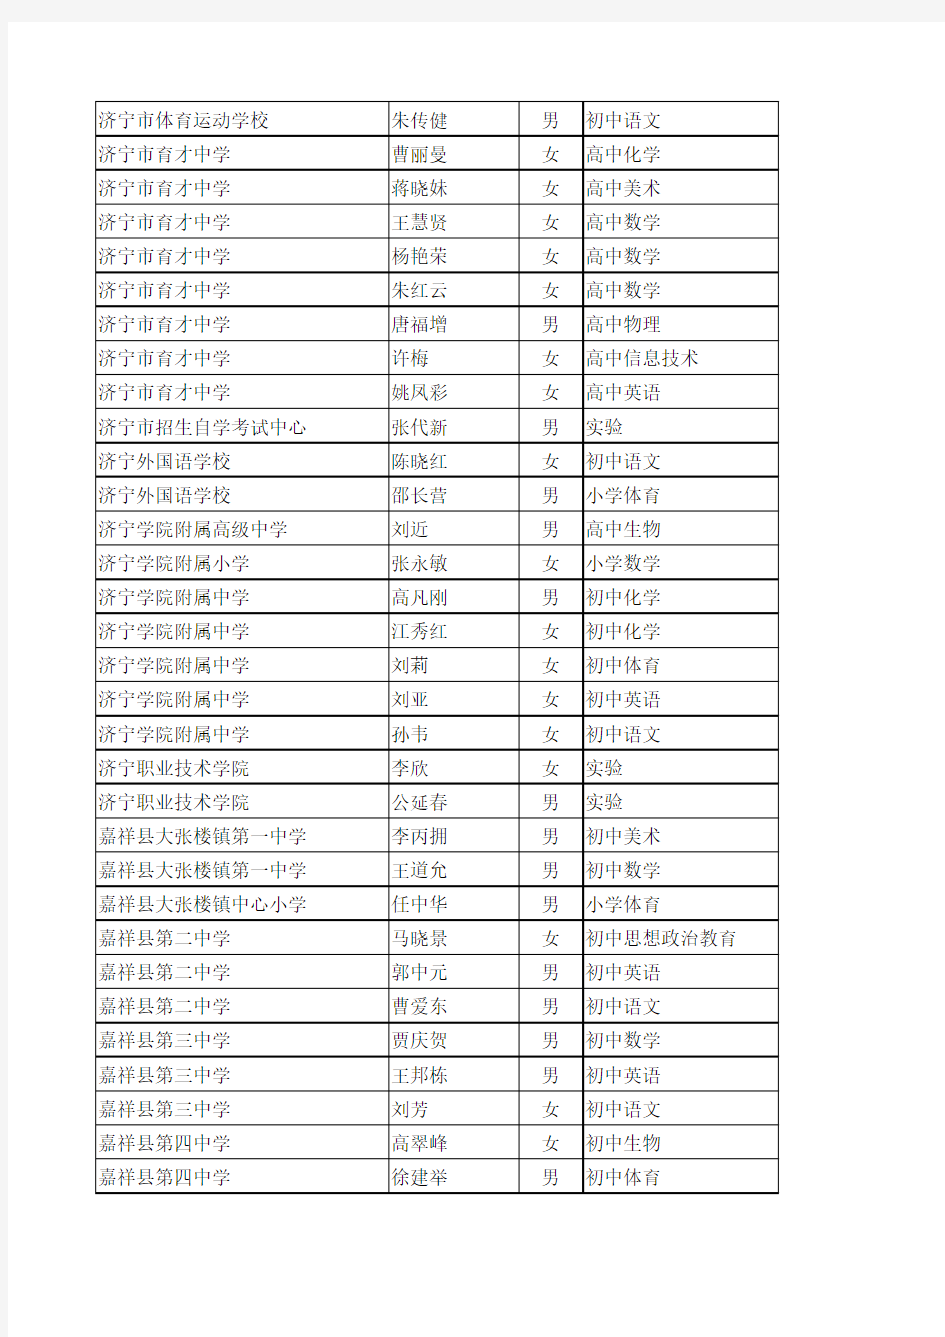 2013年下半年济宁市中专中小学教师职务中级评审委员会评审通过人员名单